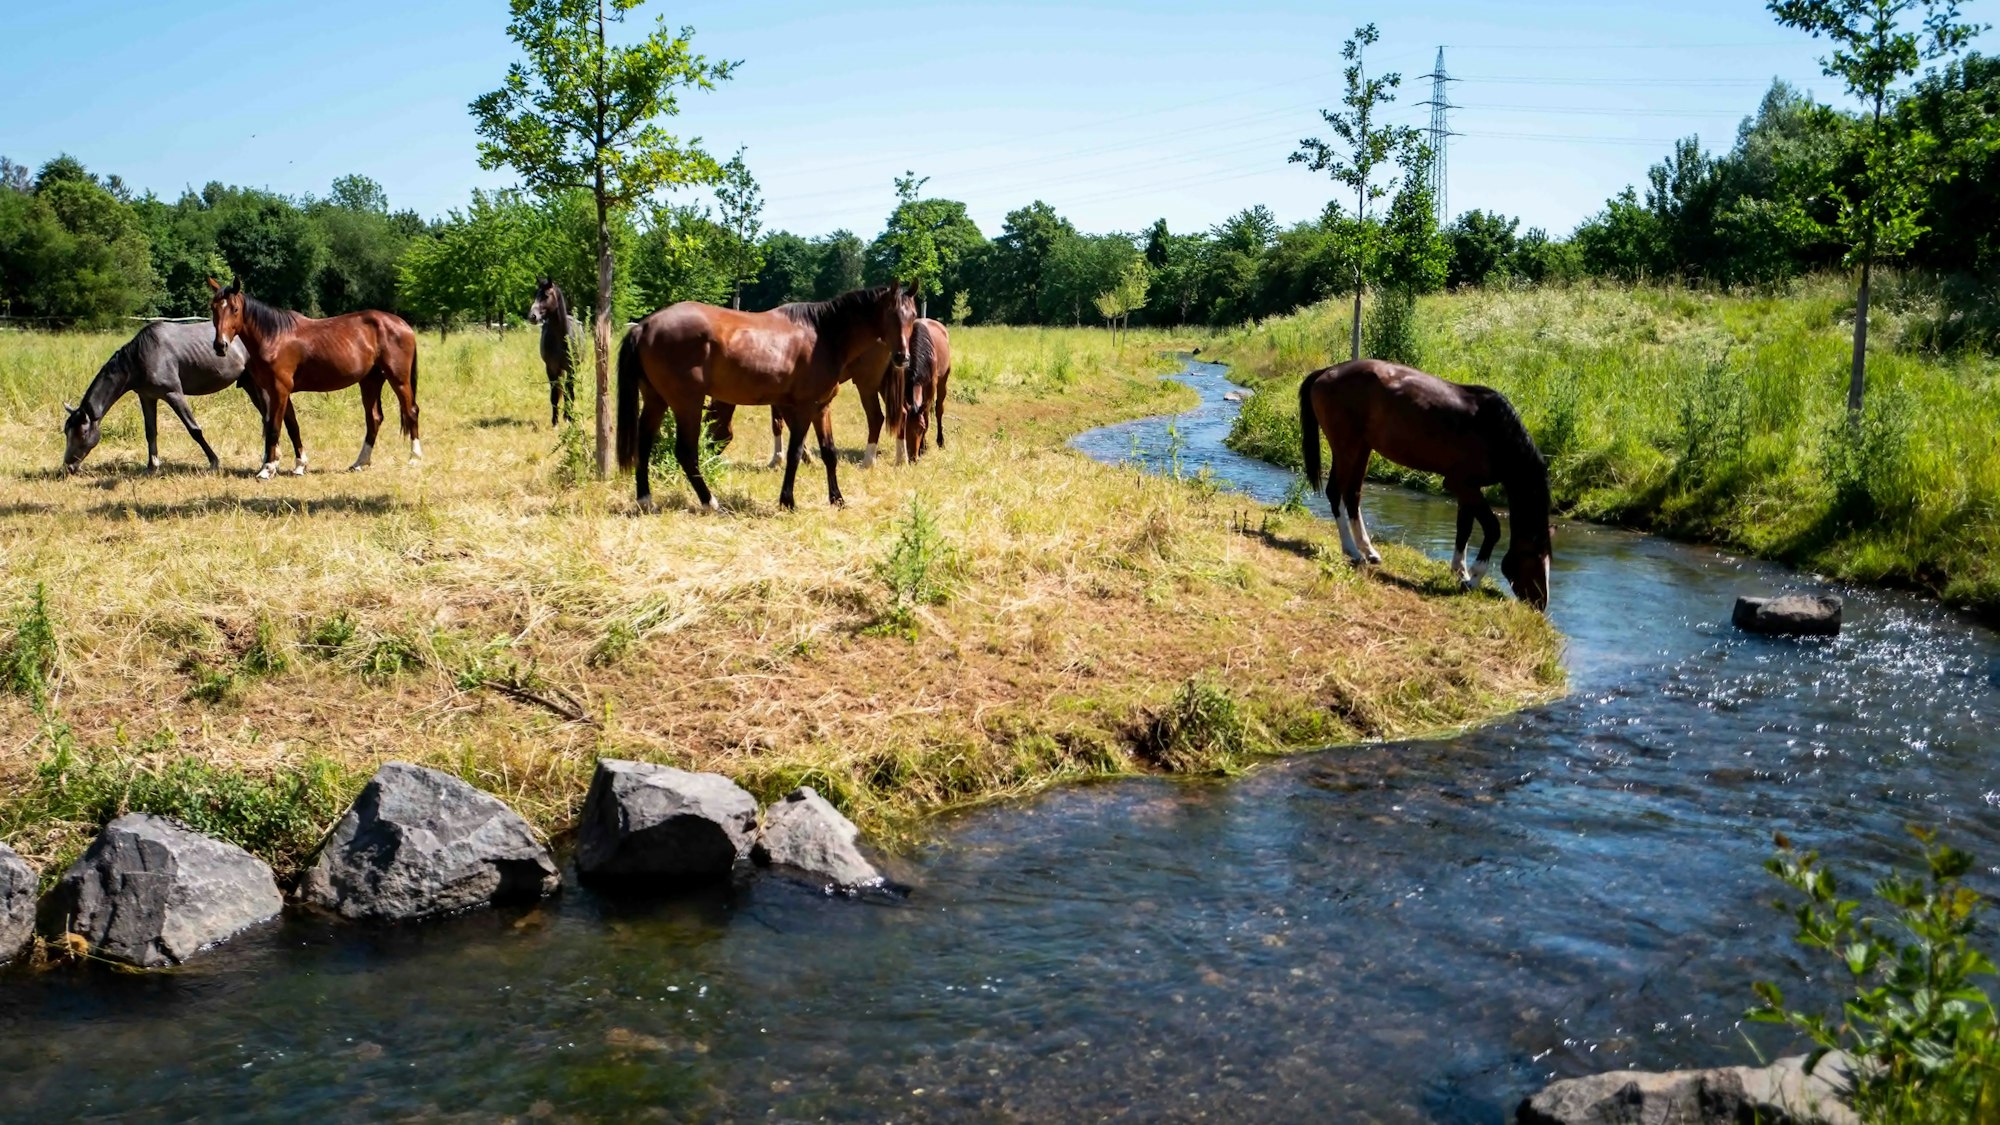 Das Bild zeigt den Veybach und eine Pferdeherde. Ein Pferd trinkt Wasser aus dem Veybach.